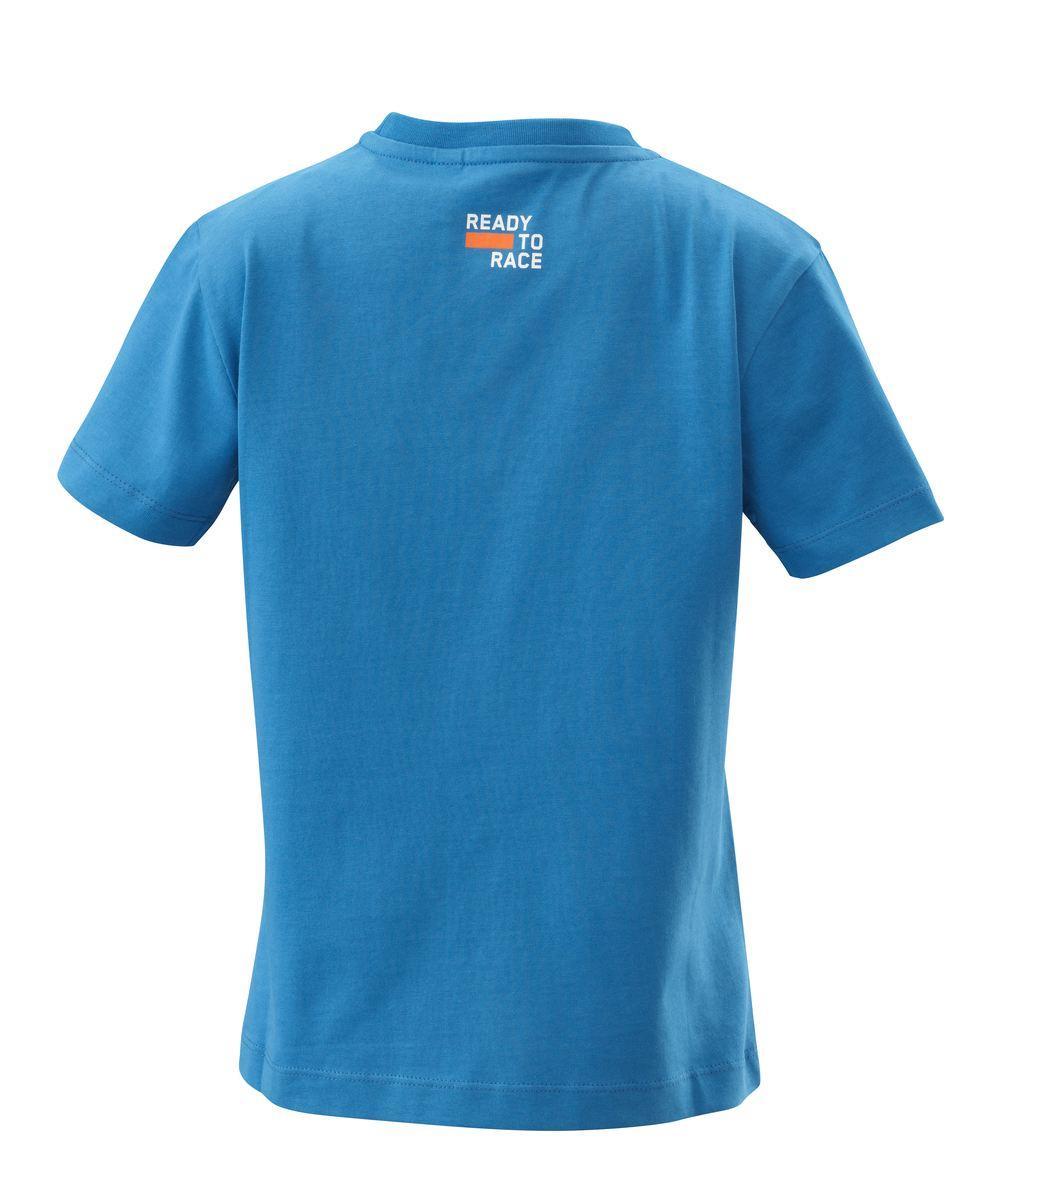 Selected image for KTM MOTO Majica za dečake plava